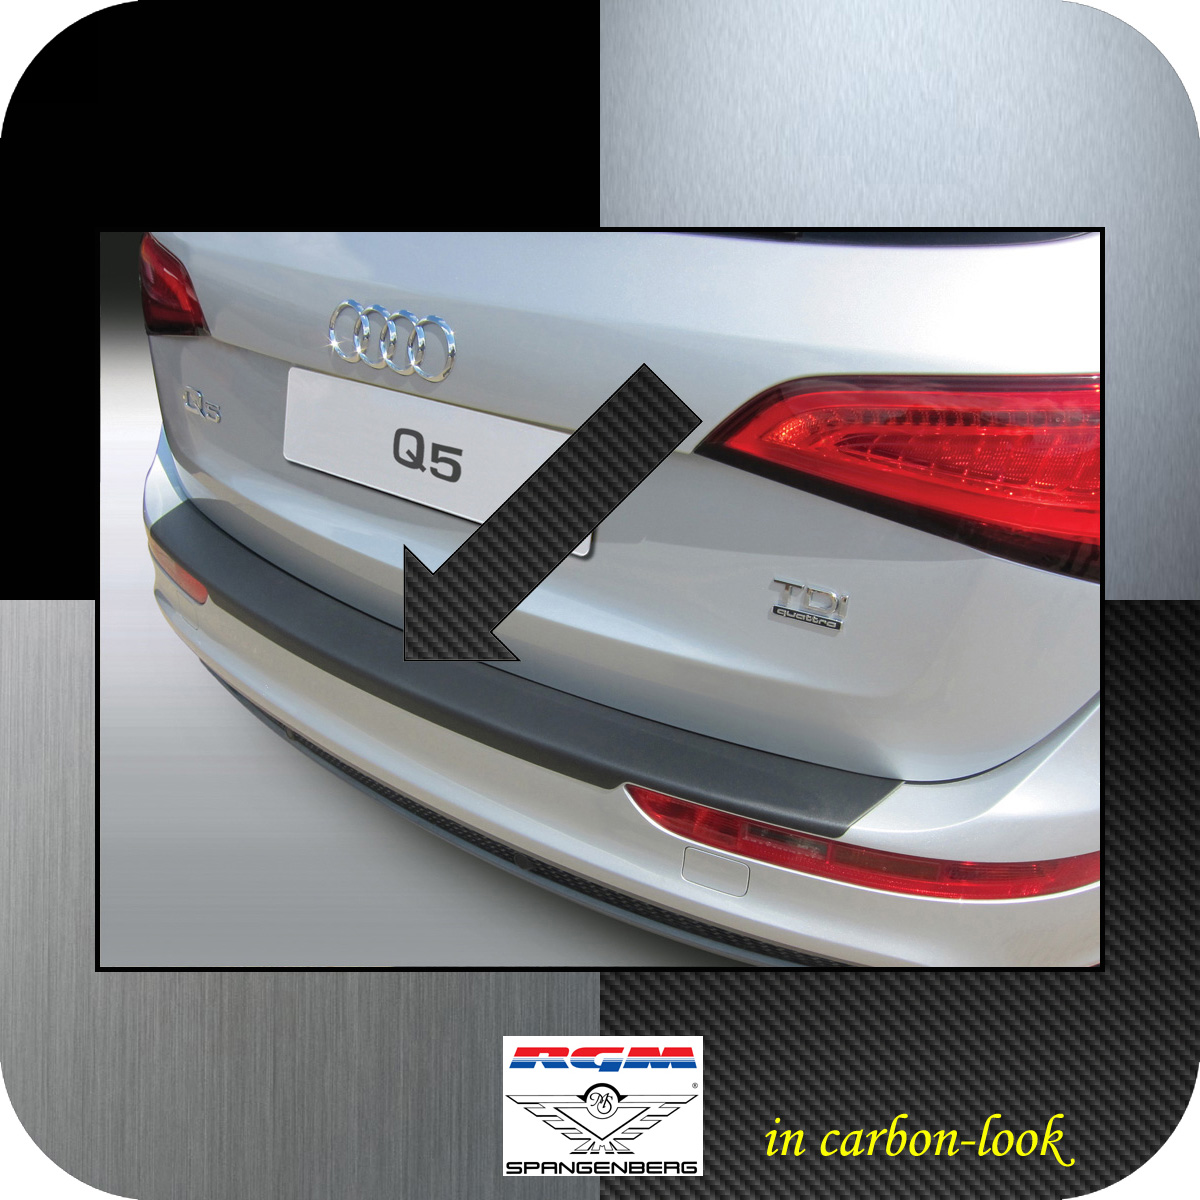 Ladekantenschutz Carbon-Look Audi Q5 SUV Kombi auch SQ5 Baujahre 2008-16 3509475